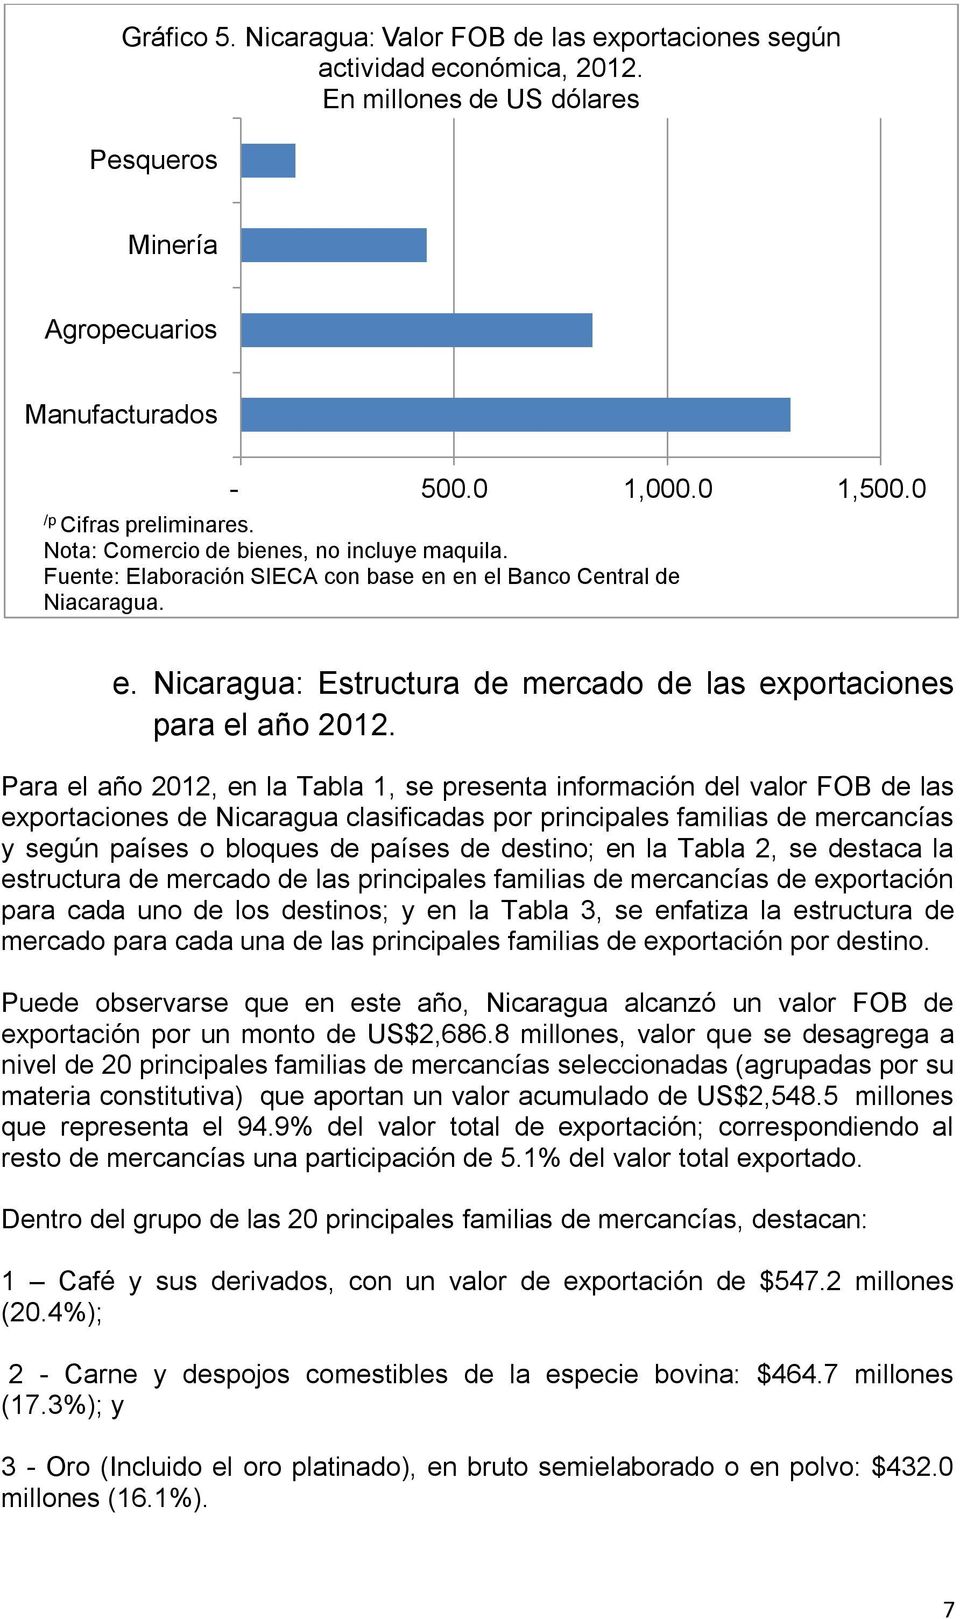 Para el año 2012, en la Tabla 1, se presenta información del valor FOB de las exportaciones de Nicaragua clasificadas por principales familias de mercancías y según países o bloques de países de